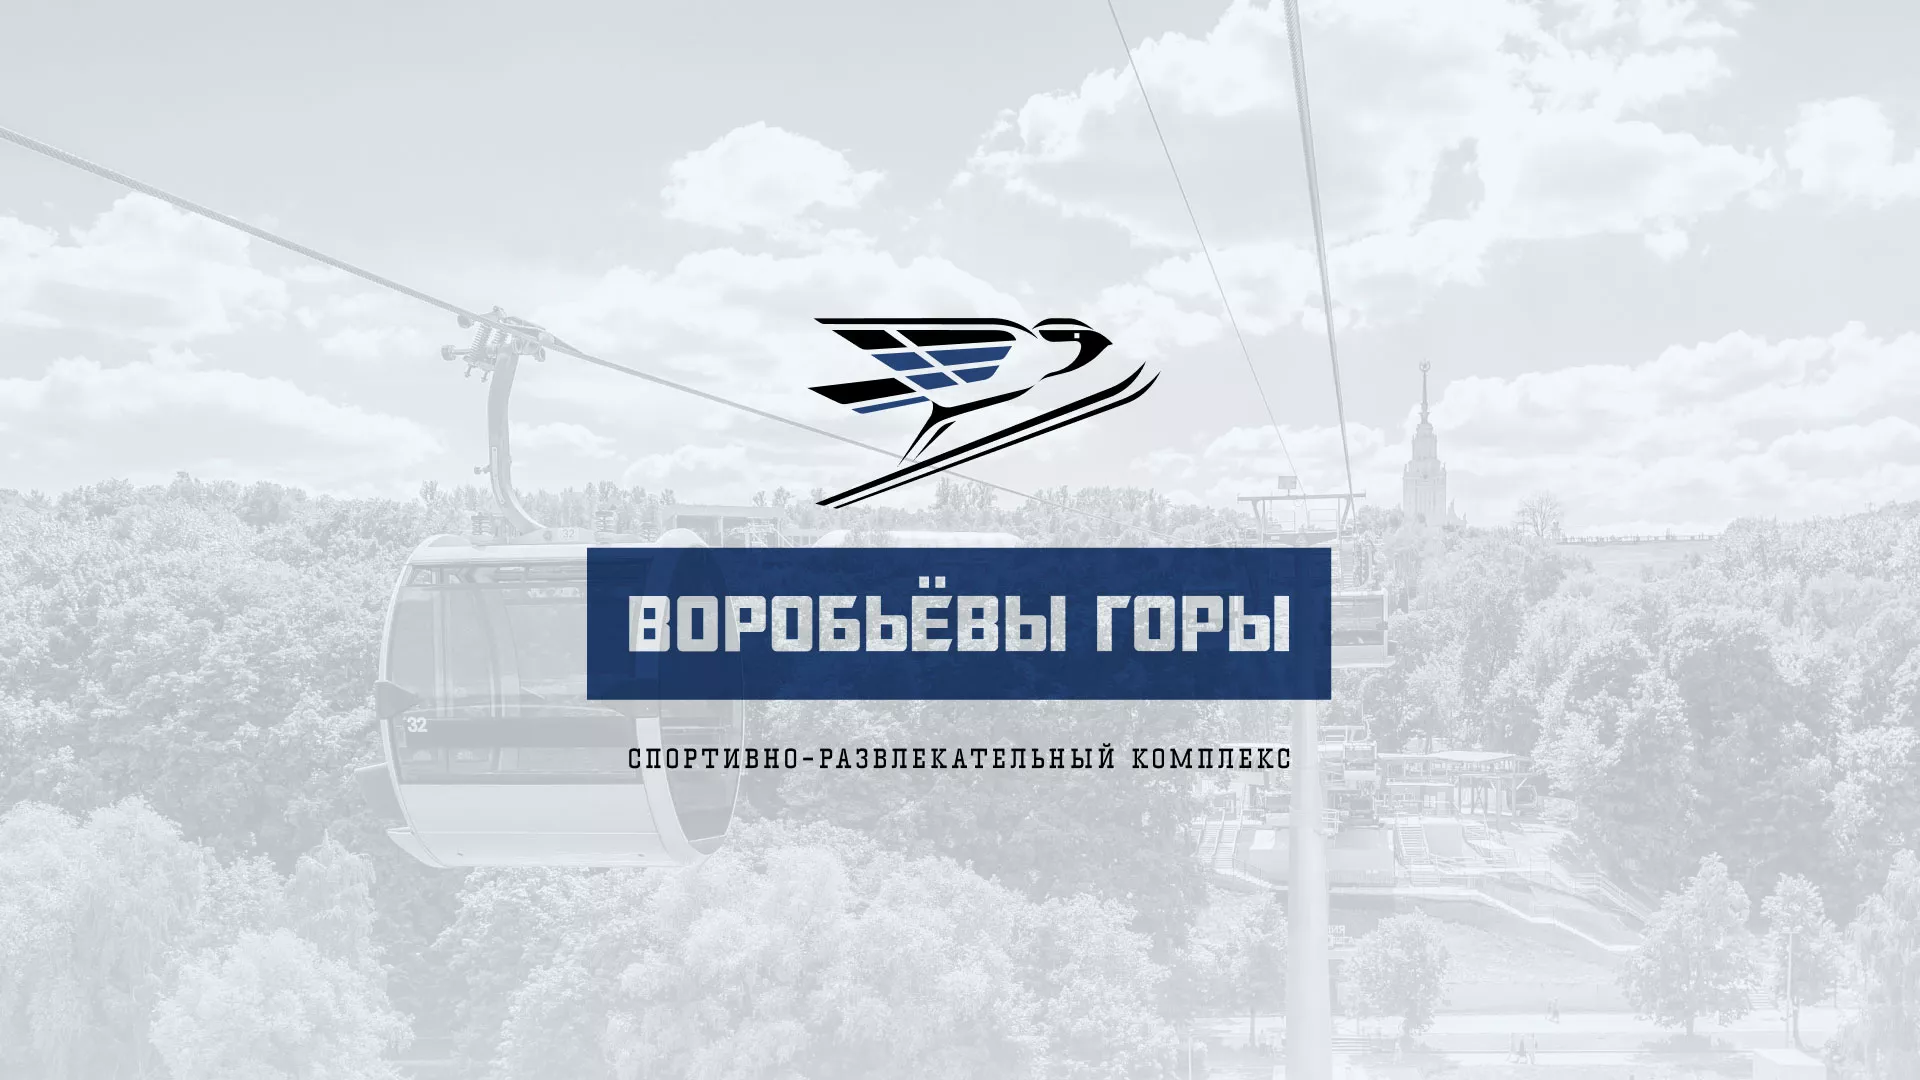 Разработка сайта в Никольске для спортивно-развлекательного комплекса «Воробьёвы горы»